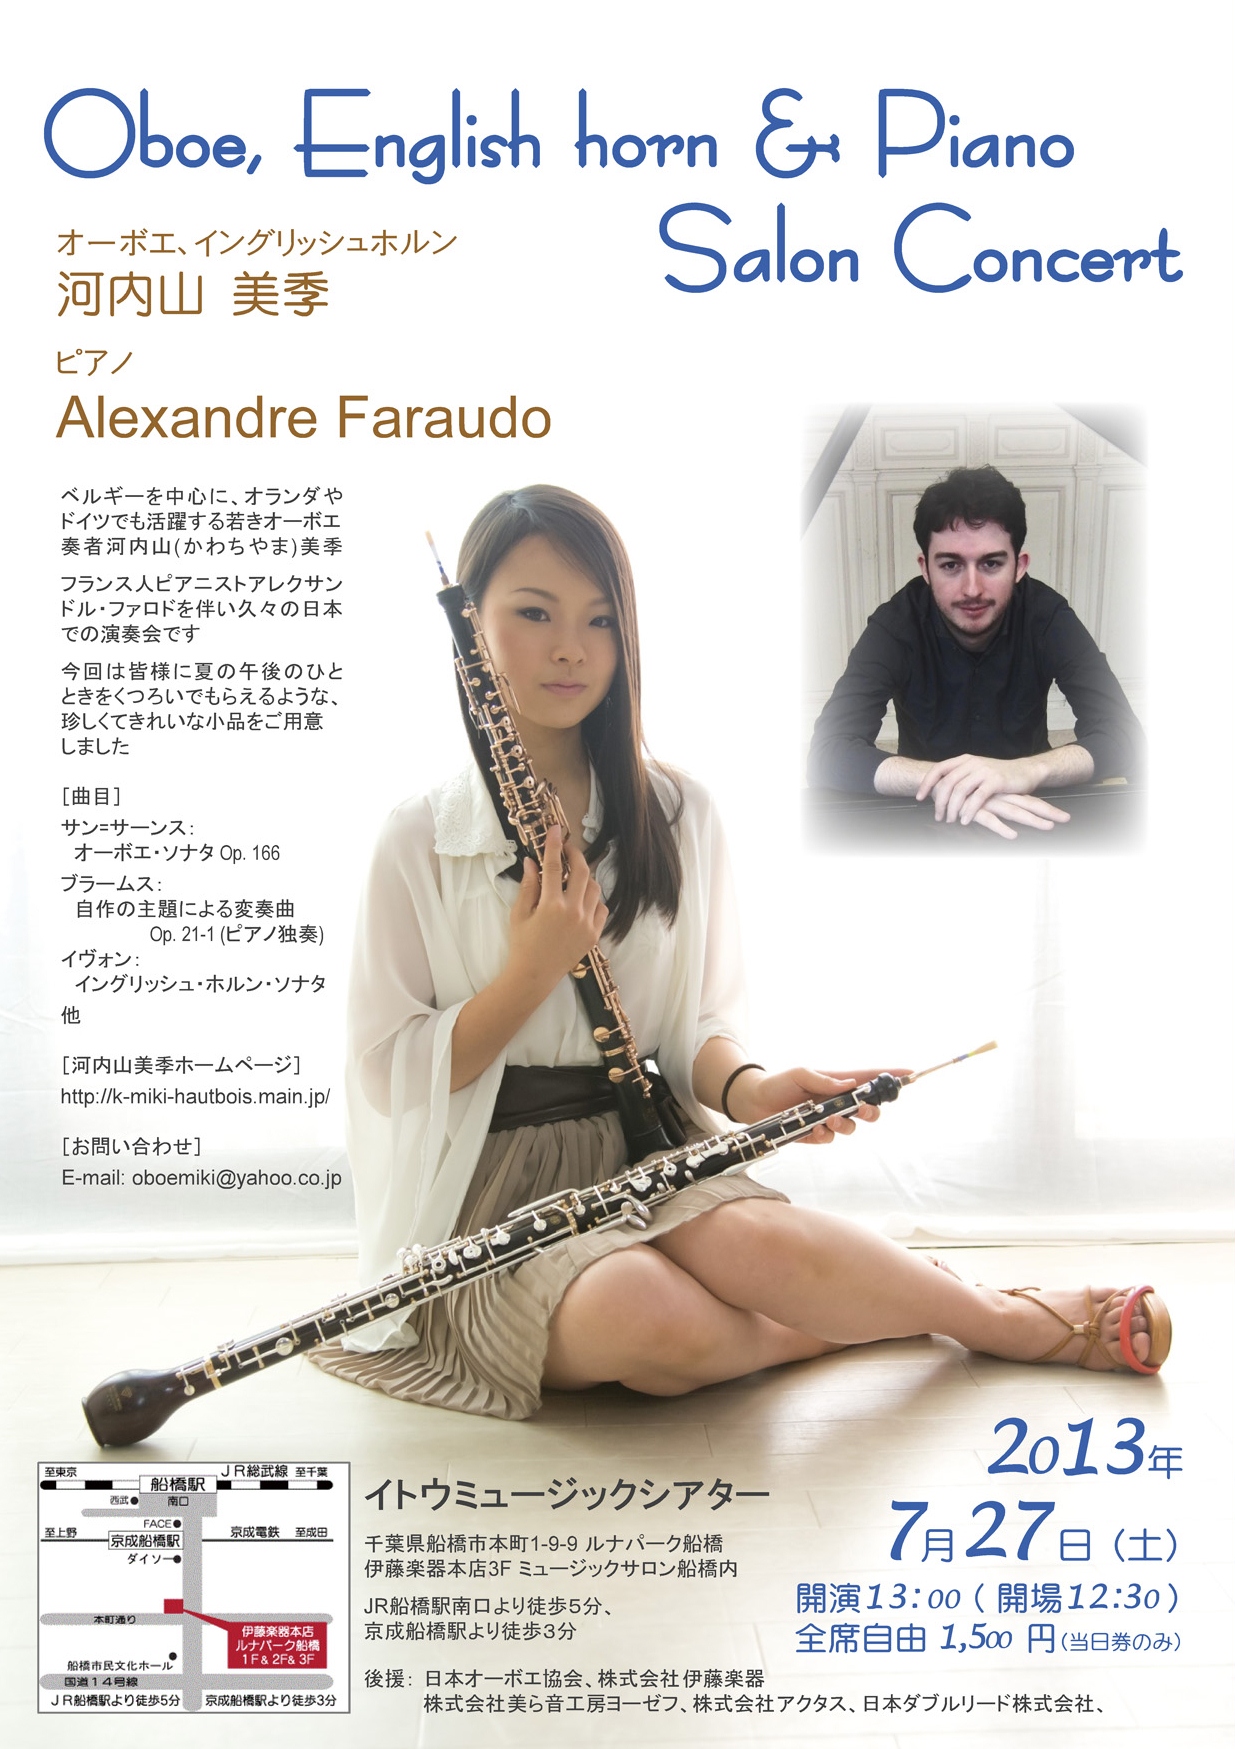 http://k-miki-hautbois.main.jp/flyer/20130727itomusic.jpg